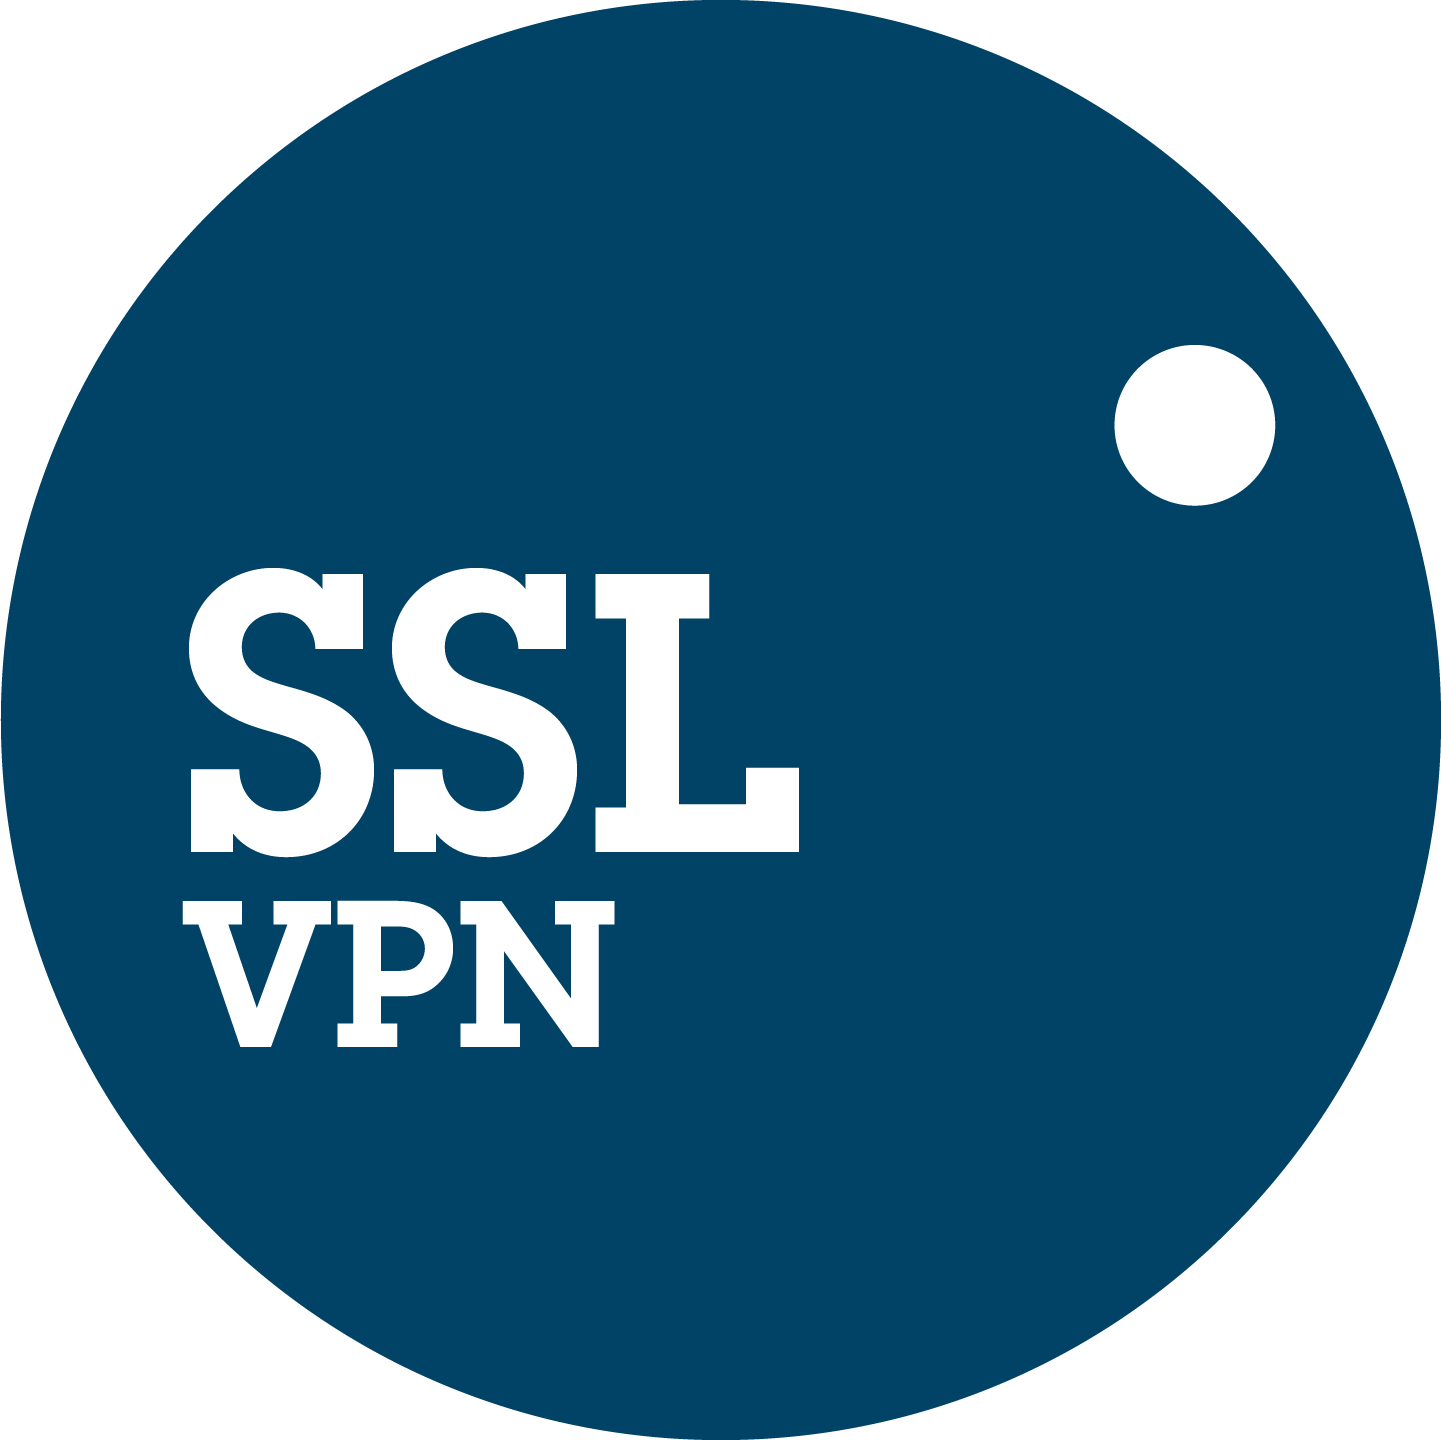 ssl vpn client access